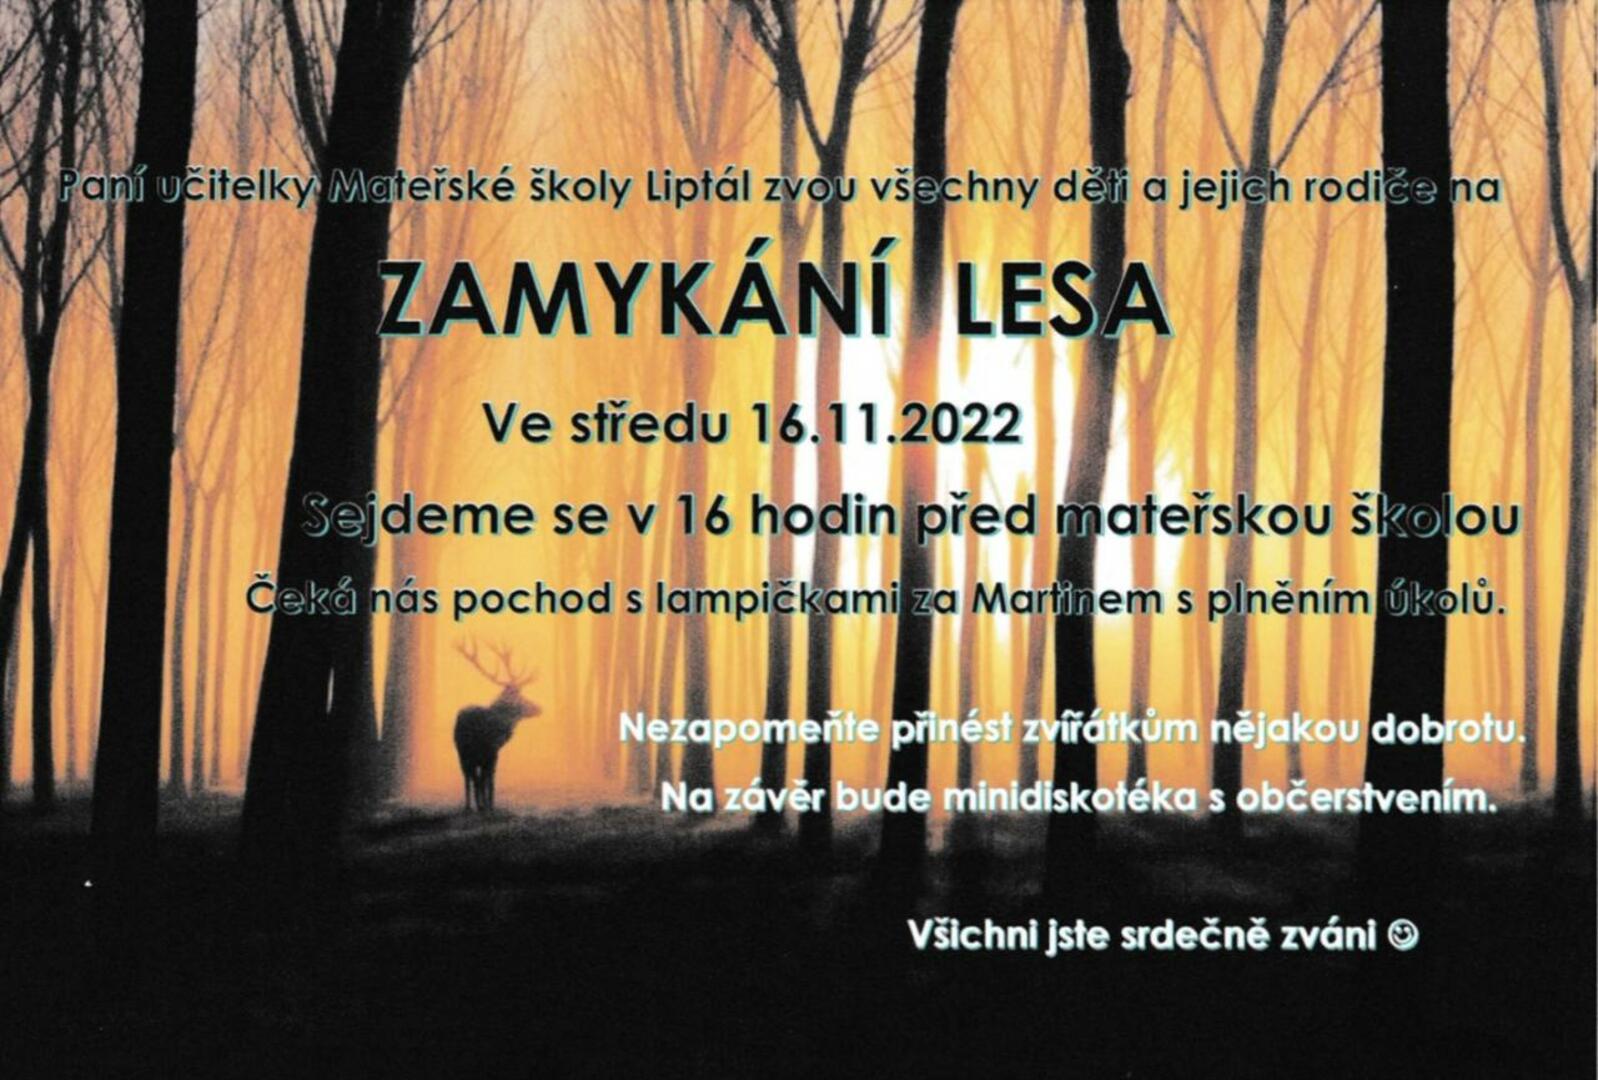 Plakát Zamykání lesa s MŠ 16.11.2022 - FOTO